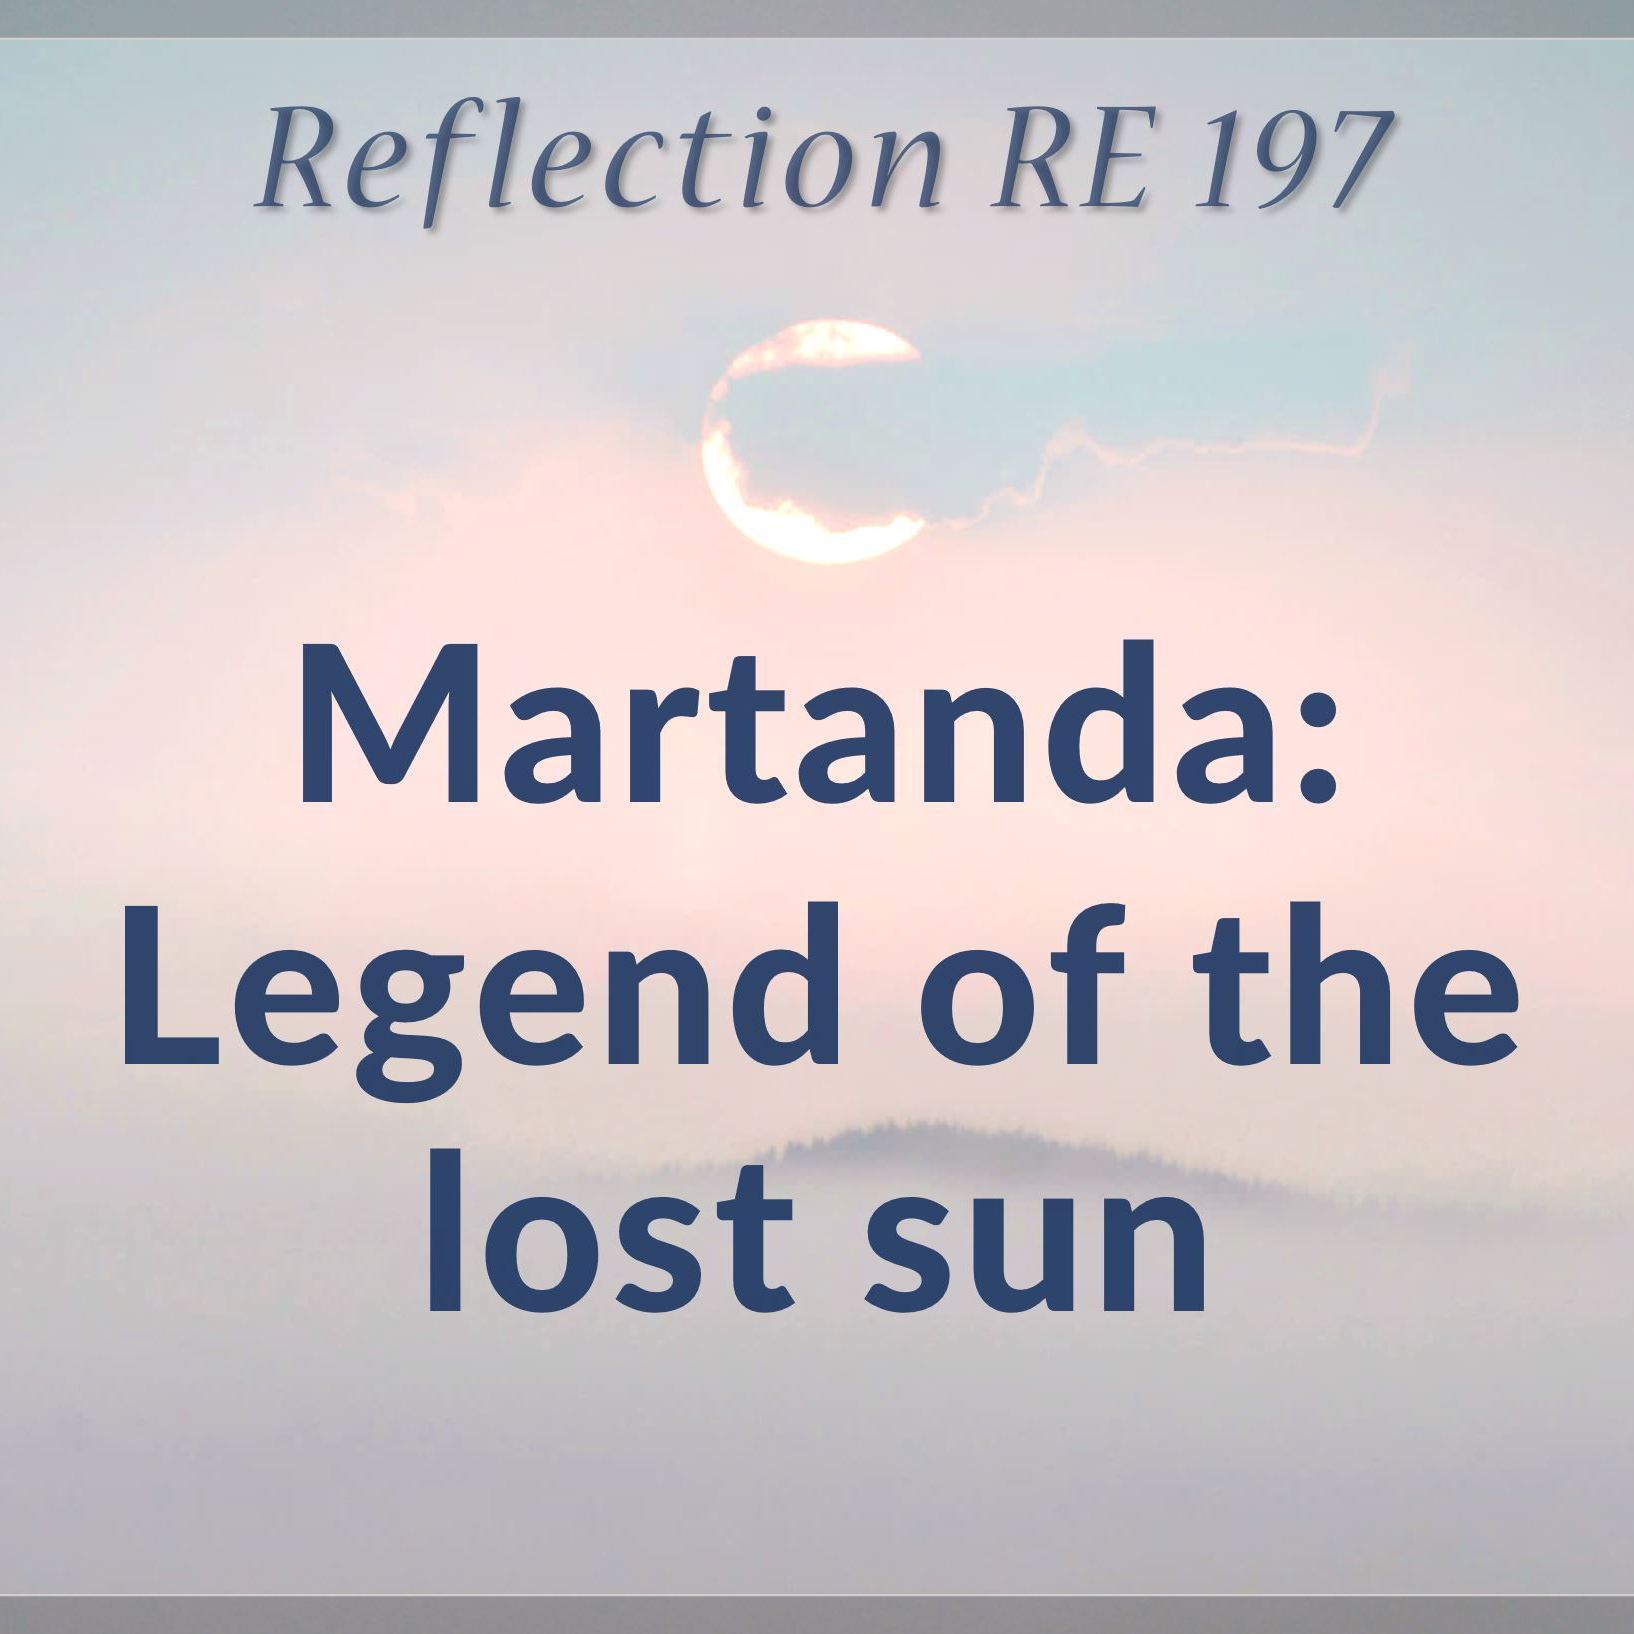 Martanda - Legend of the Lost Sun | RE 197